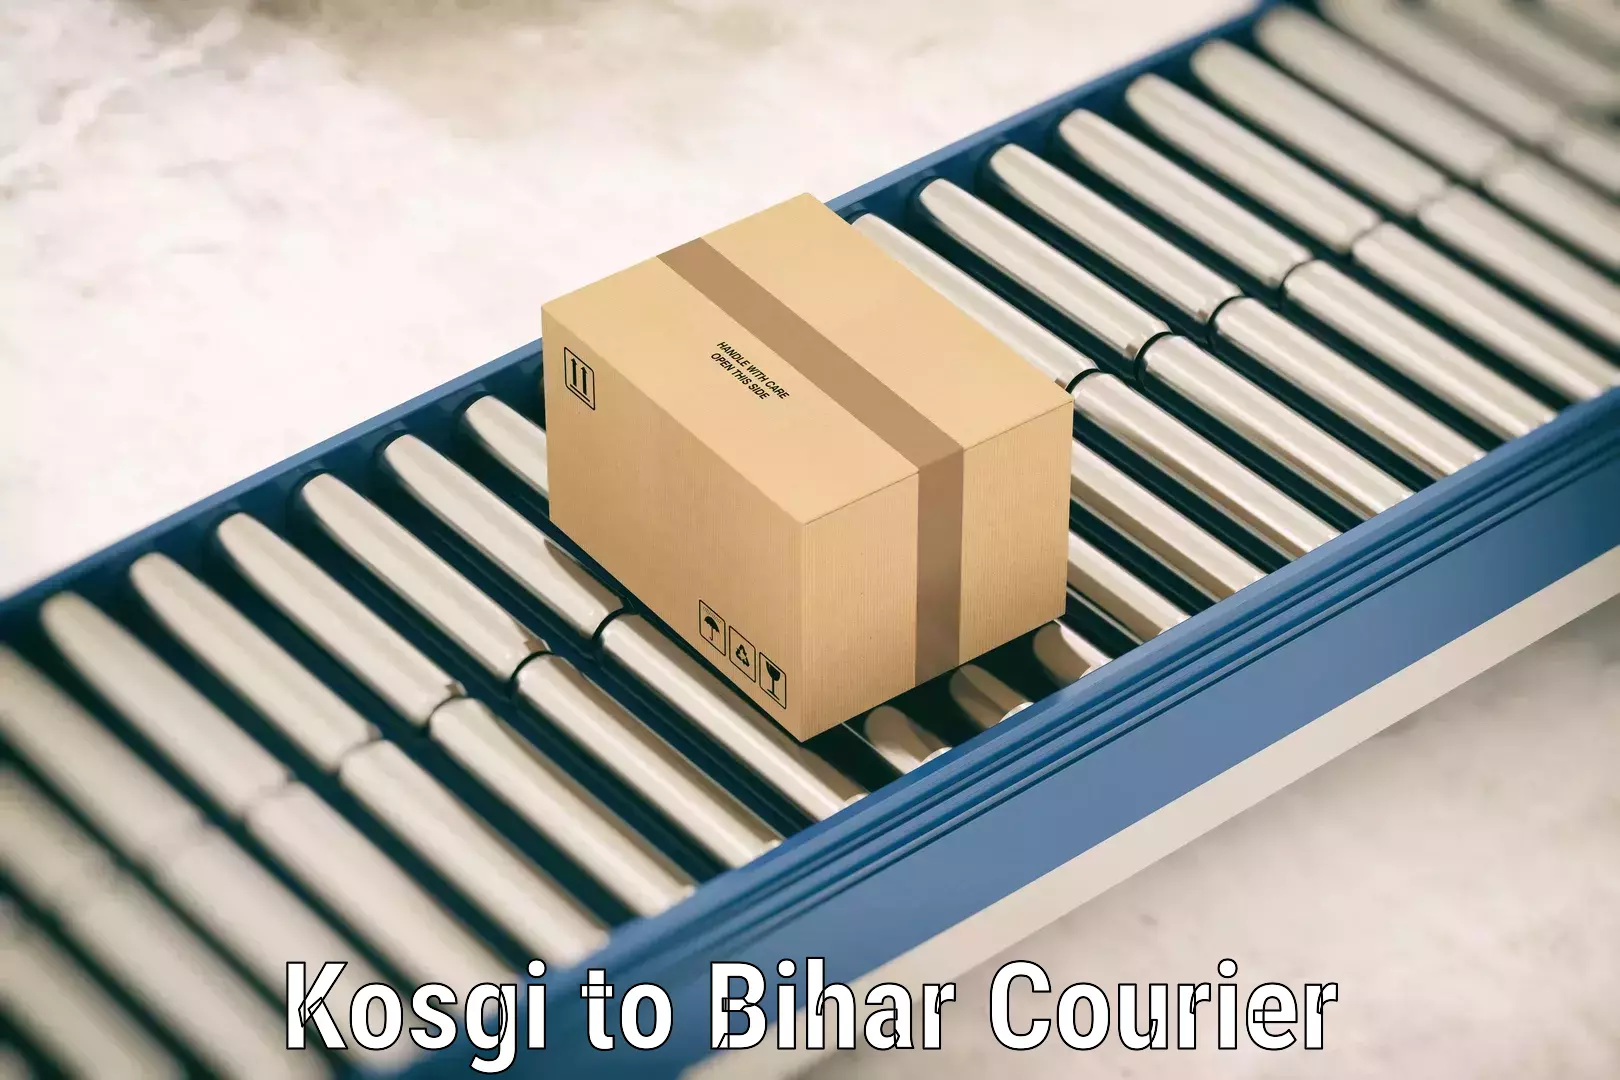 Baggage relocation service Kosgi to Bihar